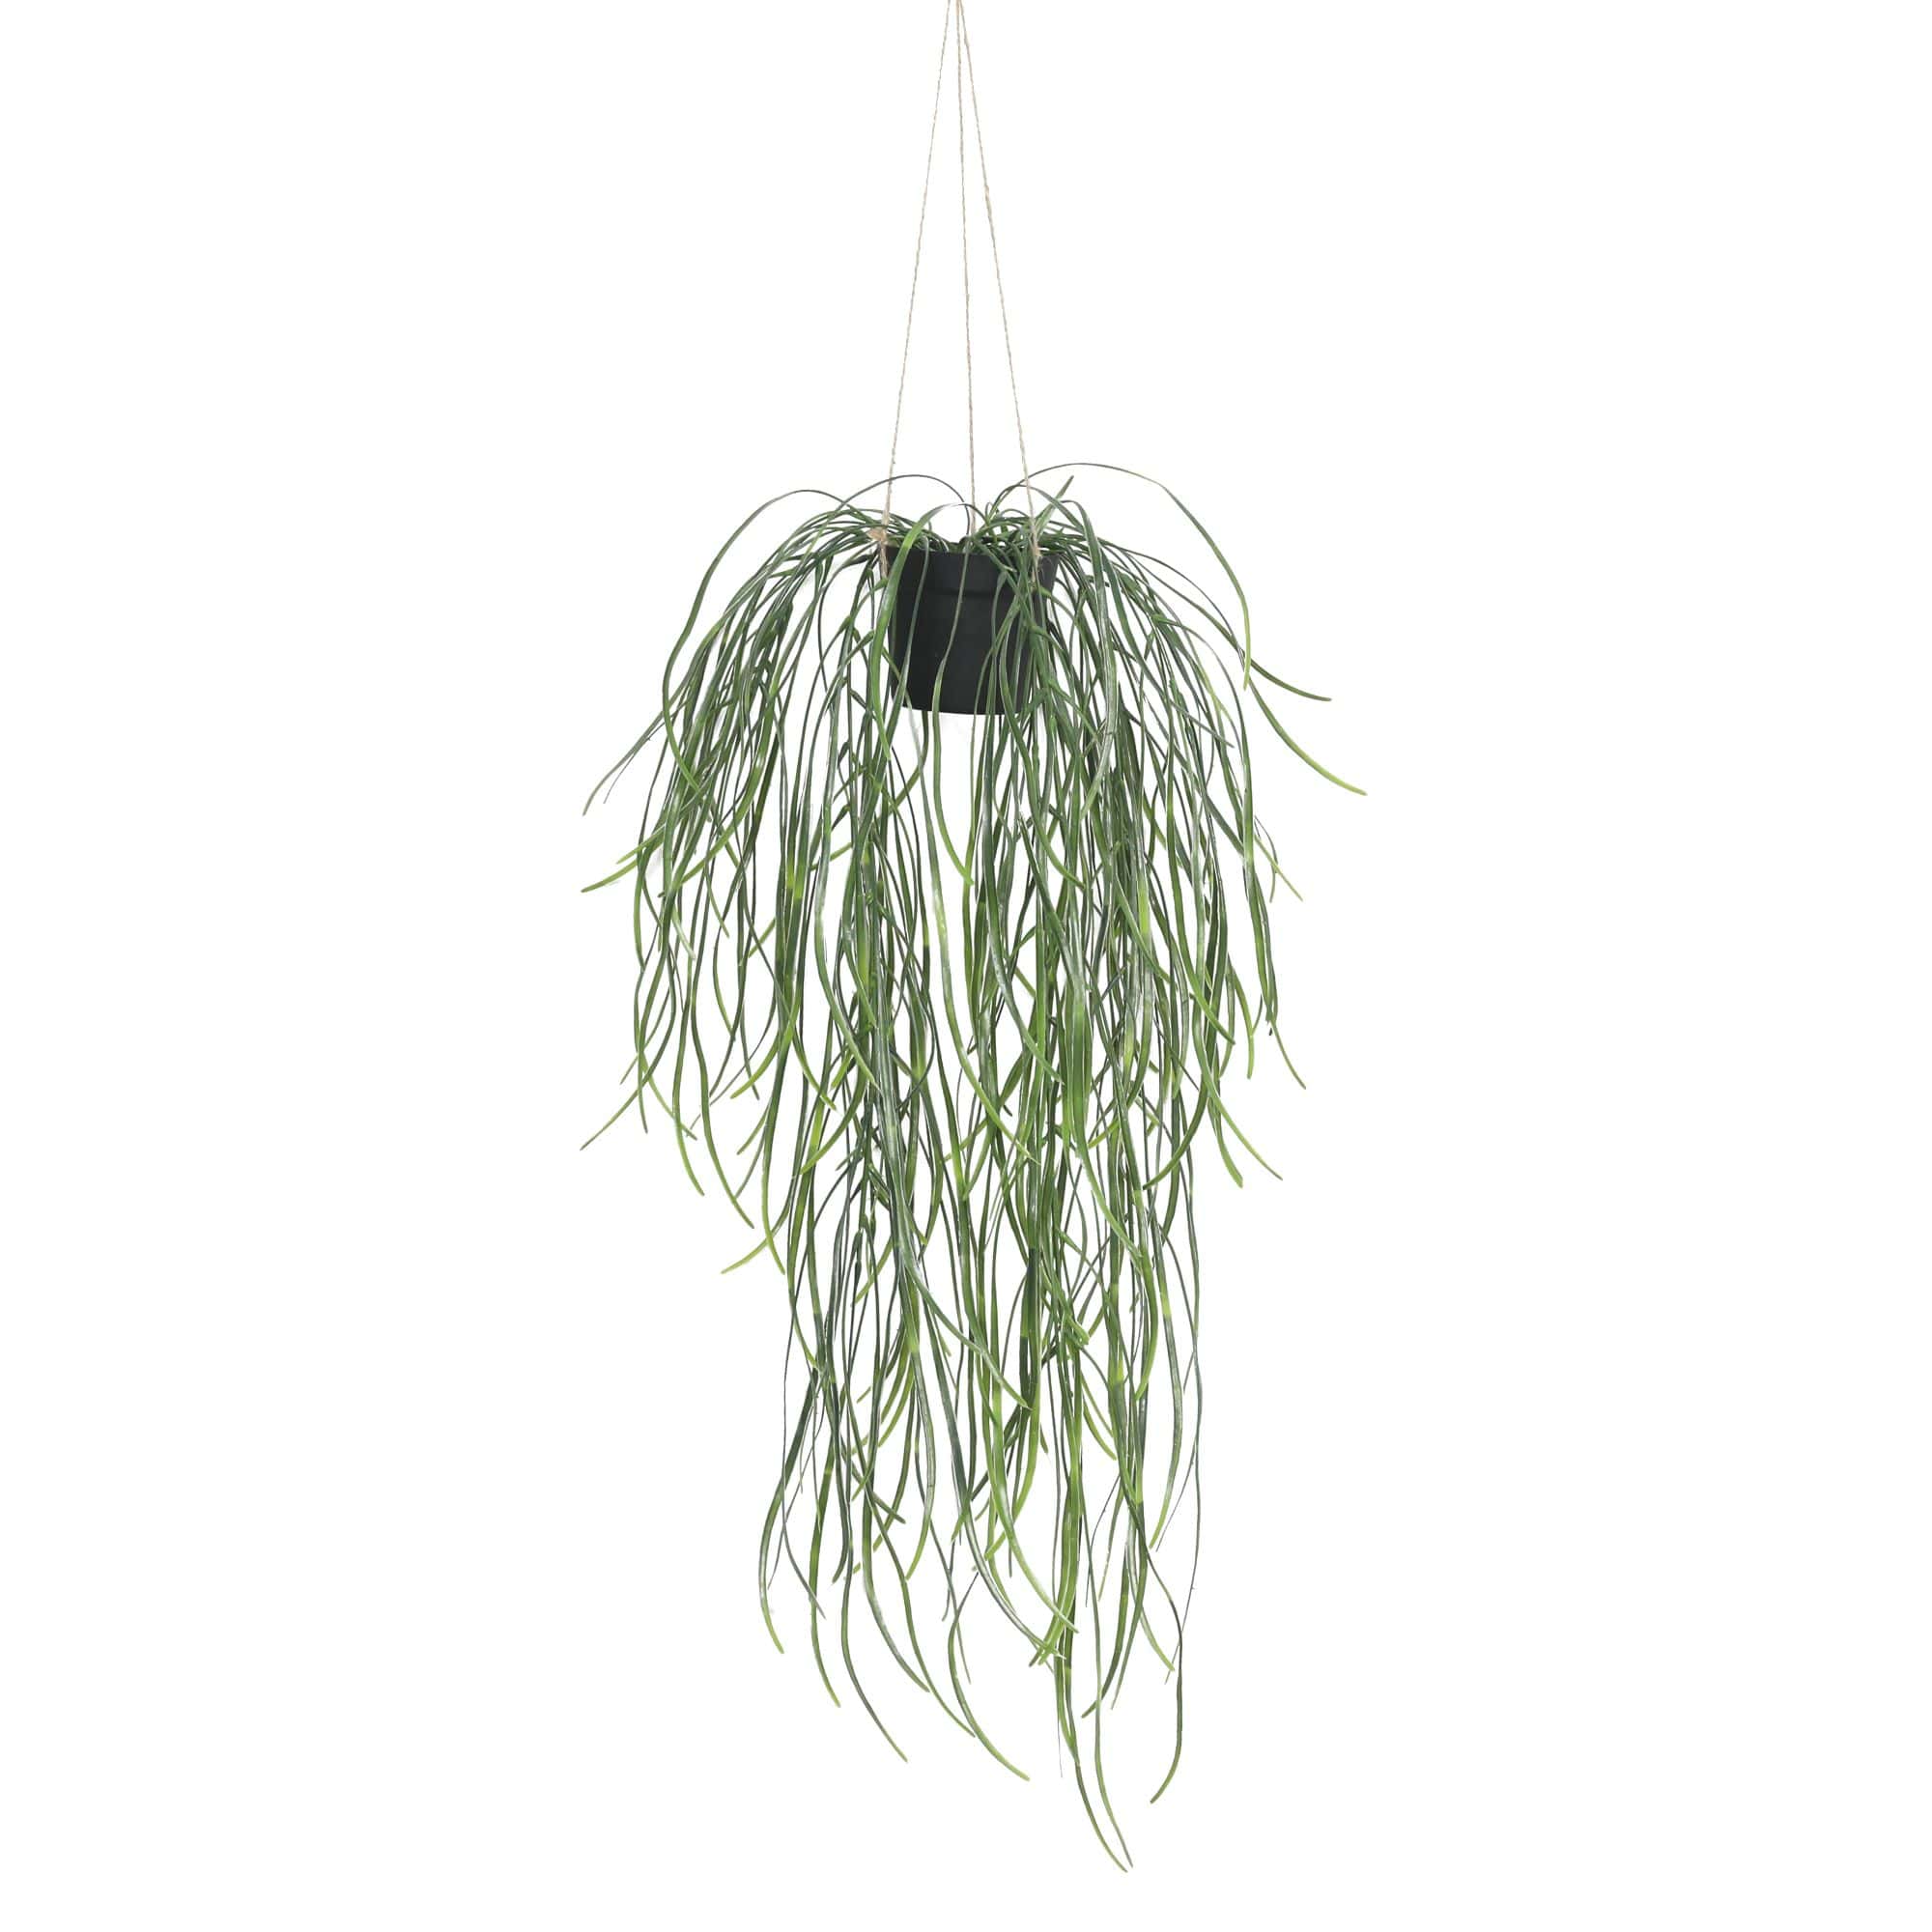 Artificial Hanging Potted Plant (Willow Leaf) 66cm UV Resistant - Designer Vertical Gardens hanging garland